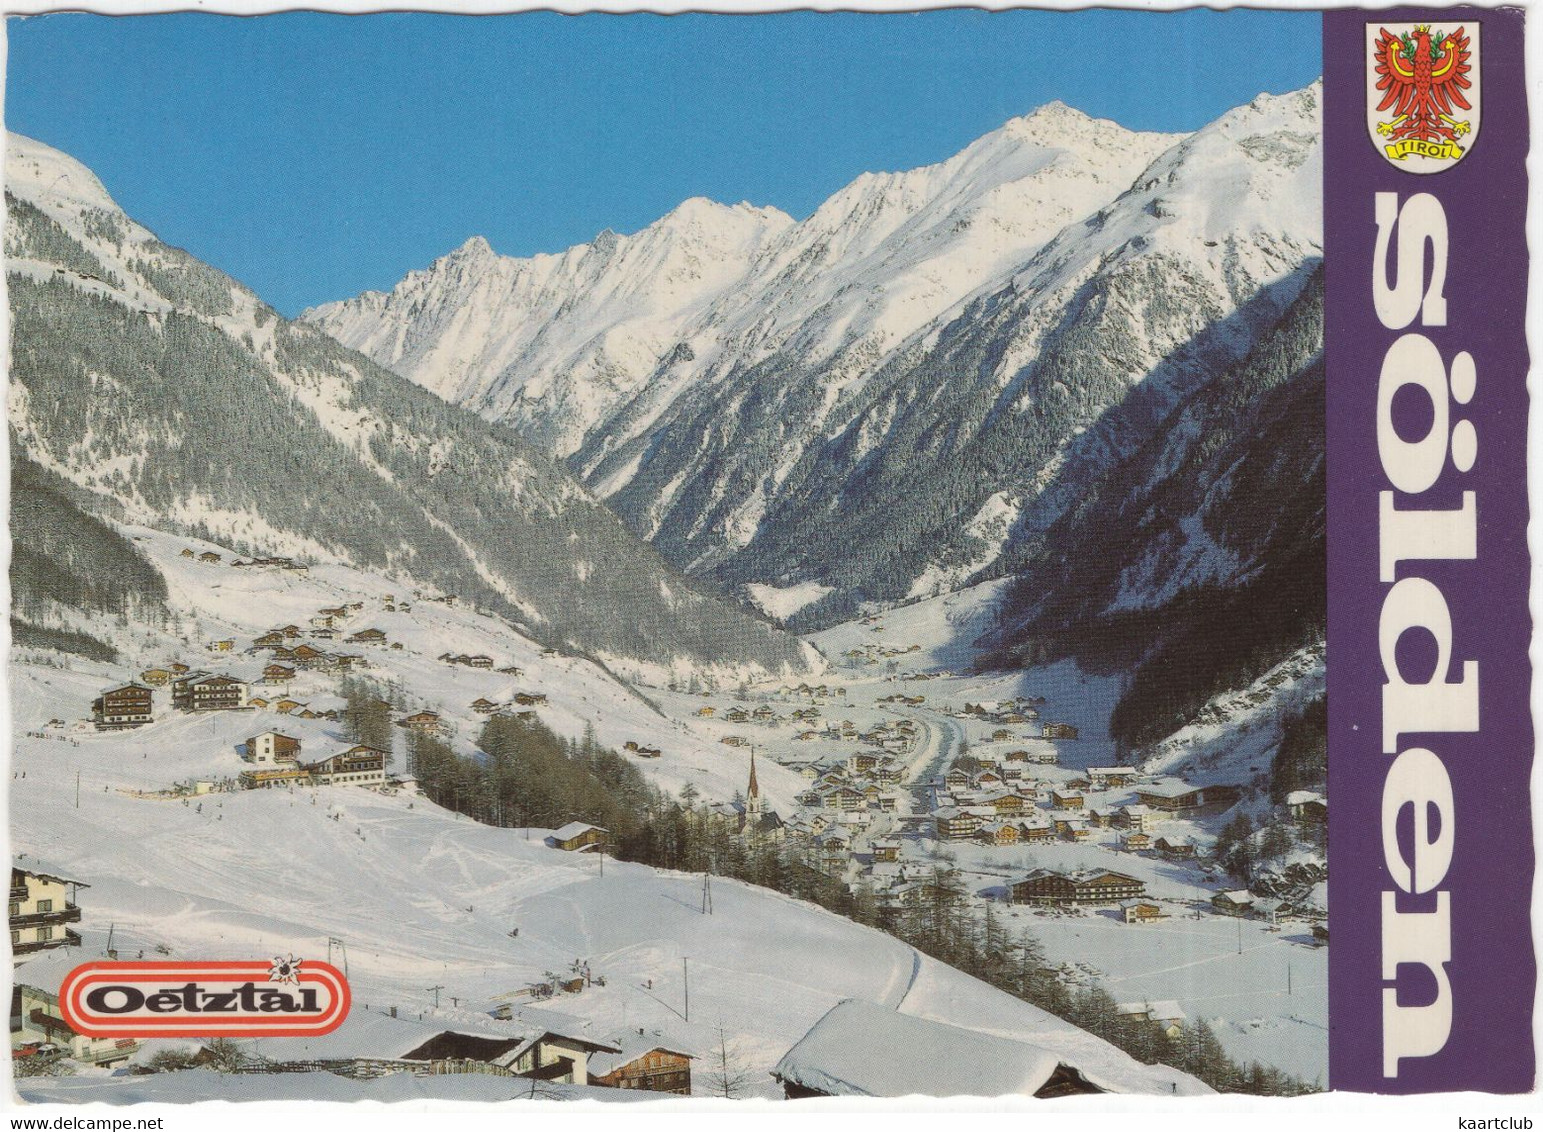 Wintersportort Sölden 1372 M - Oetztal - Tirol - (Österreich/Austria) - Sölden